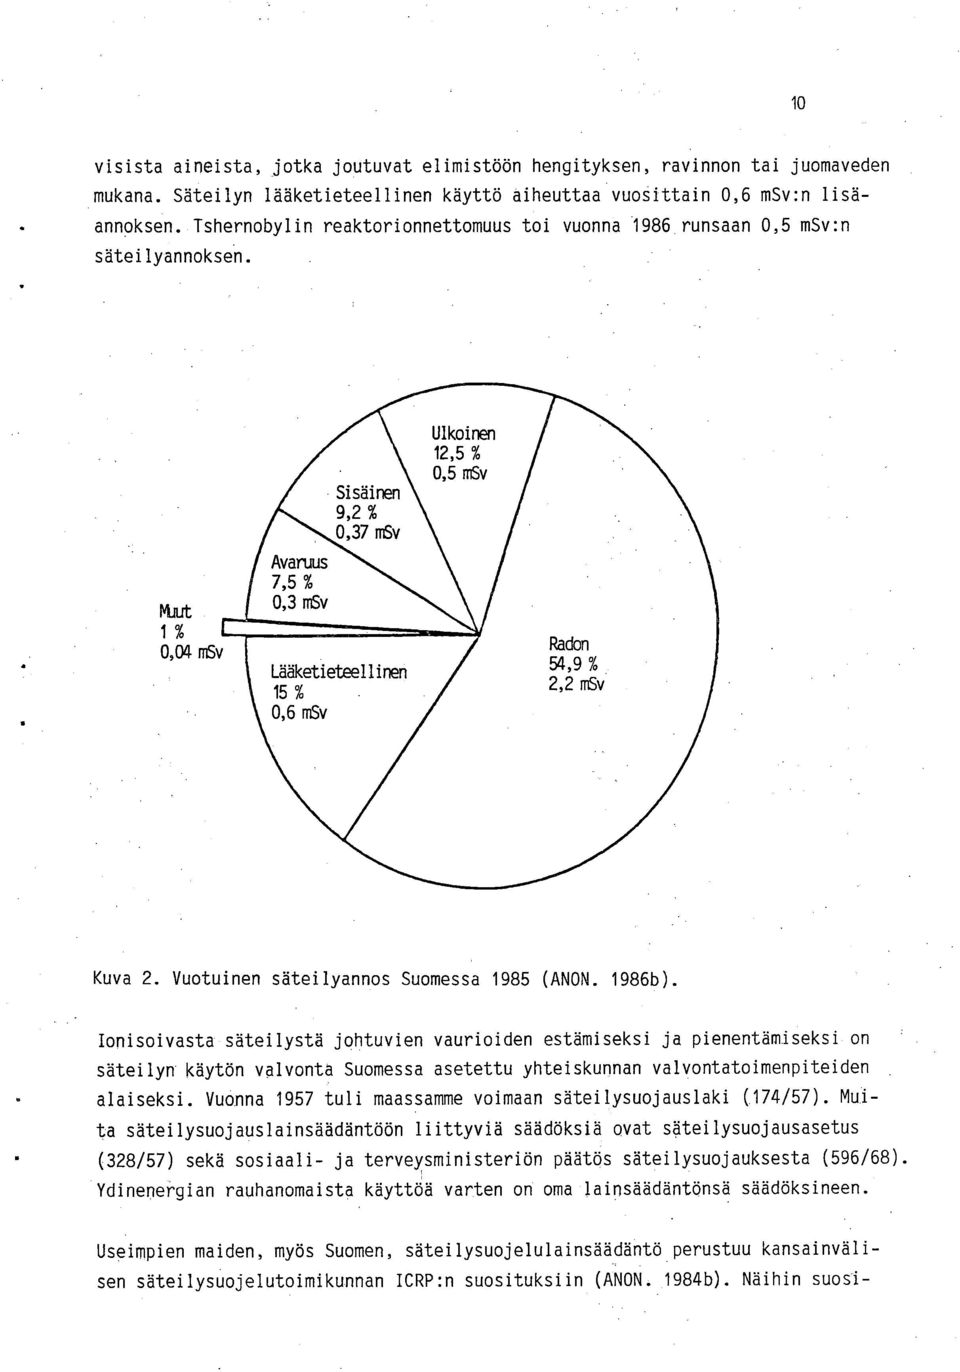 Muut 1% 0,04 msv Avaruus 7,5 % 0,3 msv Sisäinen 9,2 % 0,37 msv Lääketieteellinen 15% 0,6 msv Ulkoinen 12,5 % 0,5 msv Radon 54,9 % 2,2 msv Kuva 2. Vuotuinen säteilyannos Suomessa 1985 (ANON. 1986b).